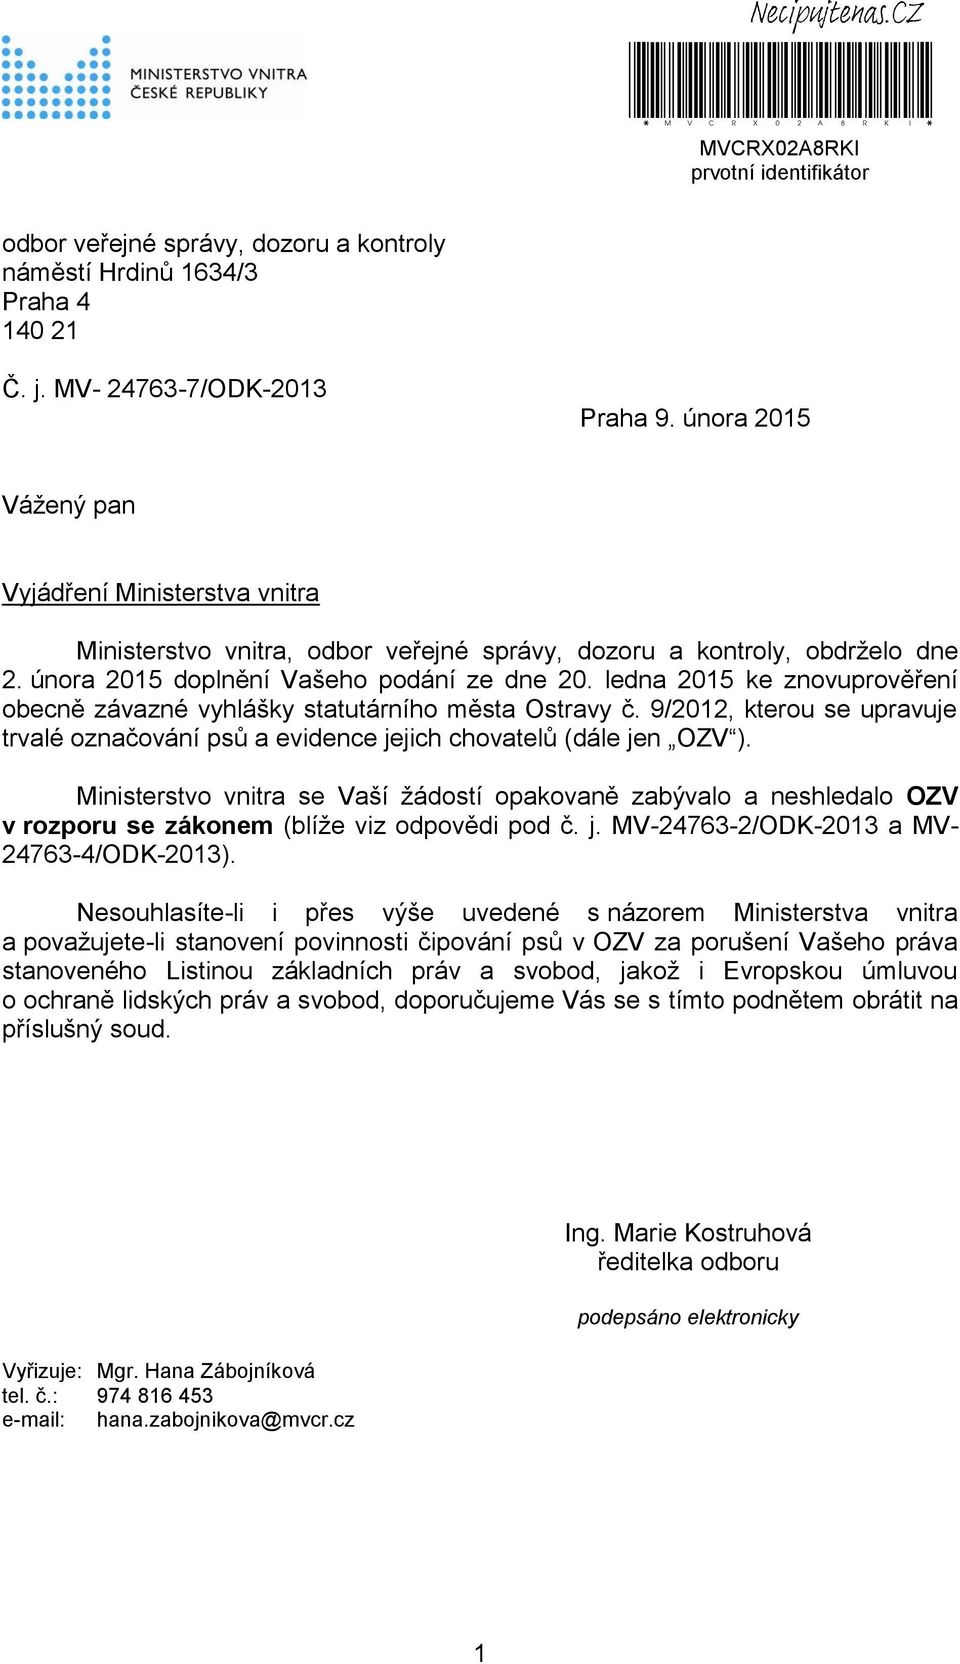 ledna 2015 ke znovuprověření obecně závazné vyhlášky statutárního města Ostravy č. 9/2012, kterou se upravuje trvalé označování psů a evidence jejich chovatelů (dále jen OZV ).